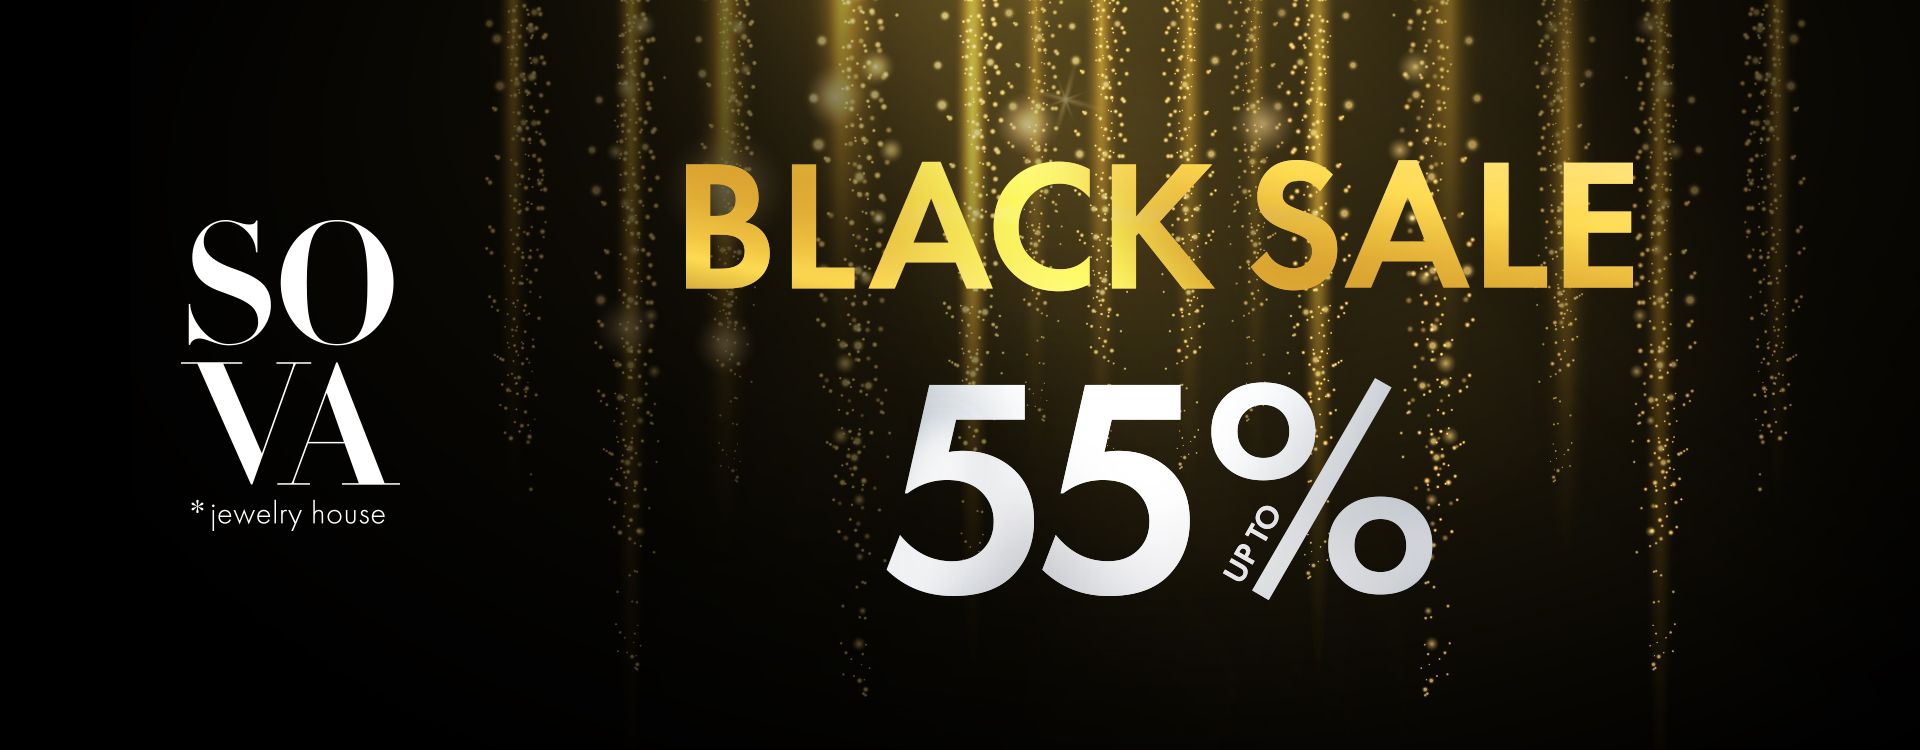 BLACK Sale up to 55% in SOVA 